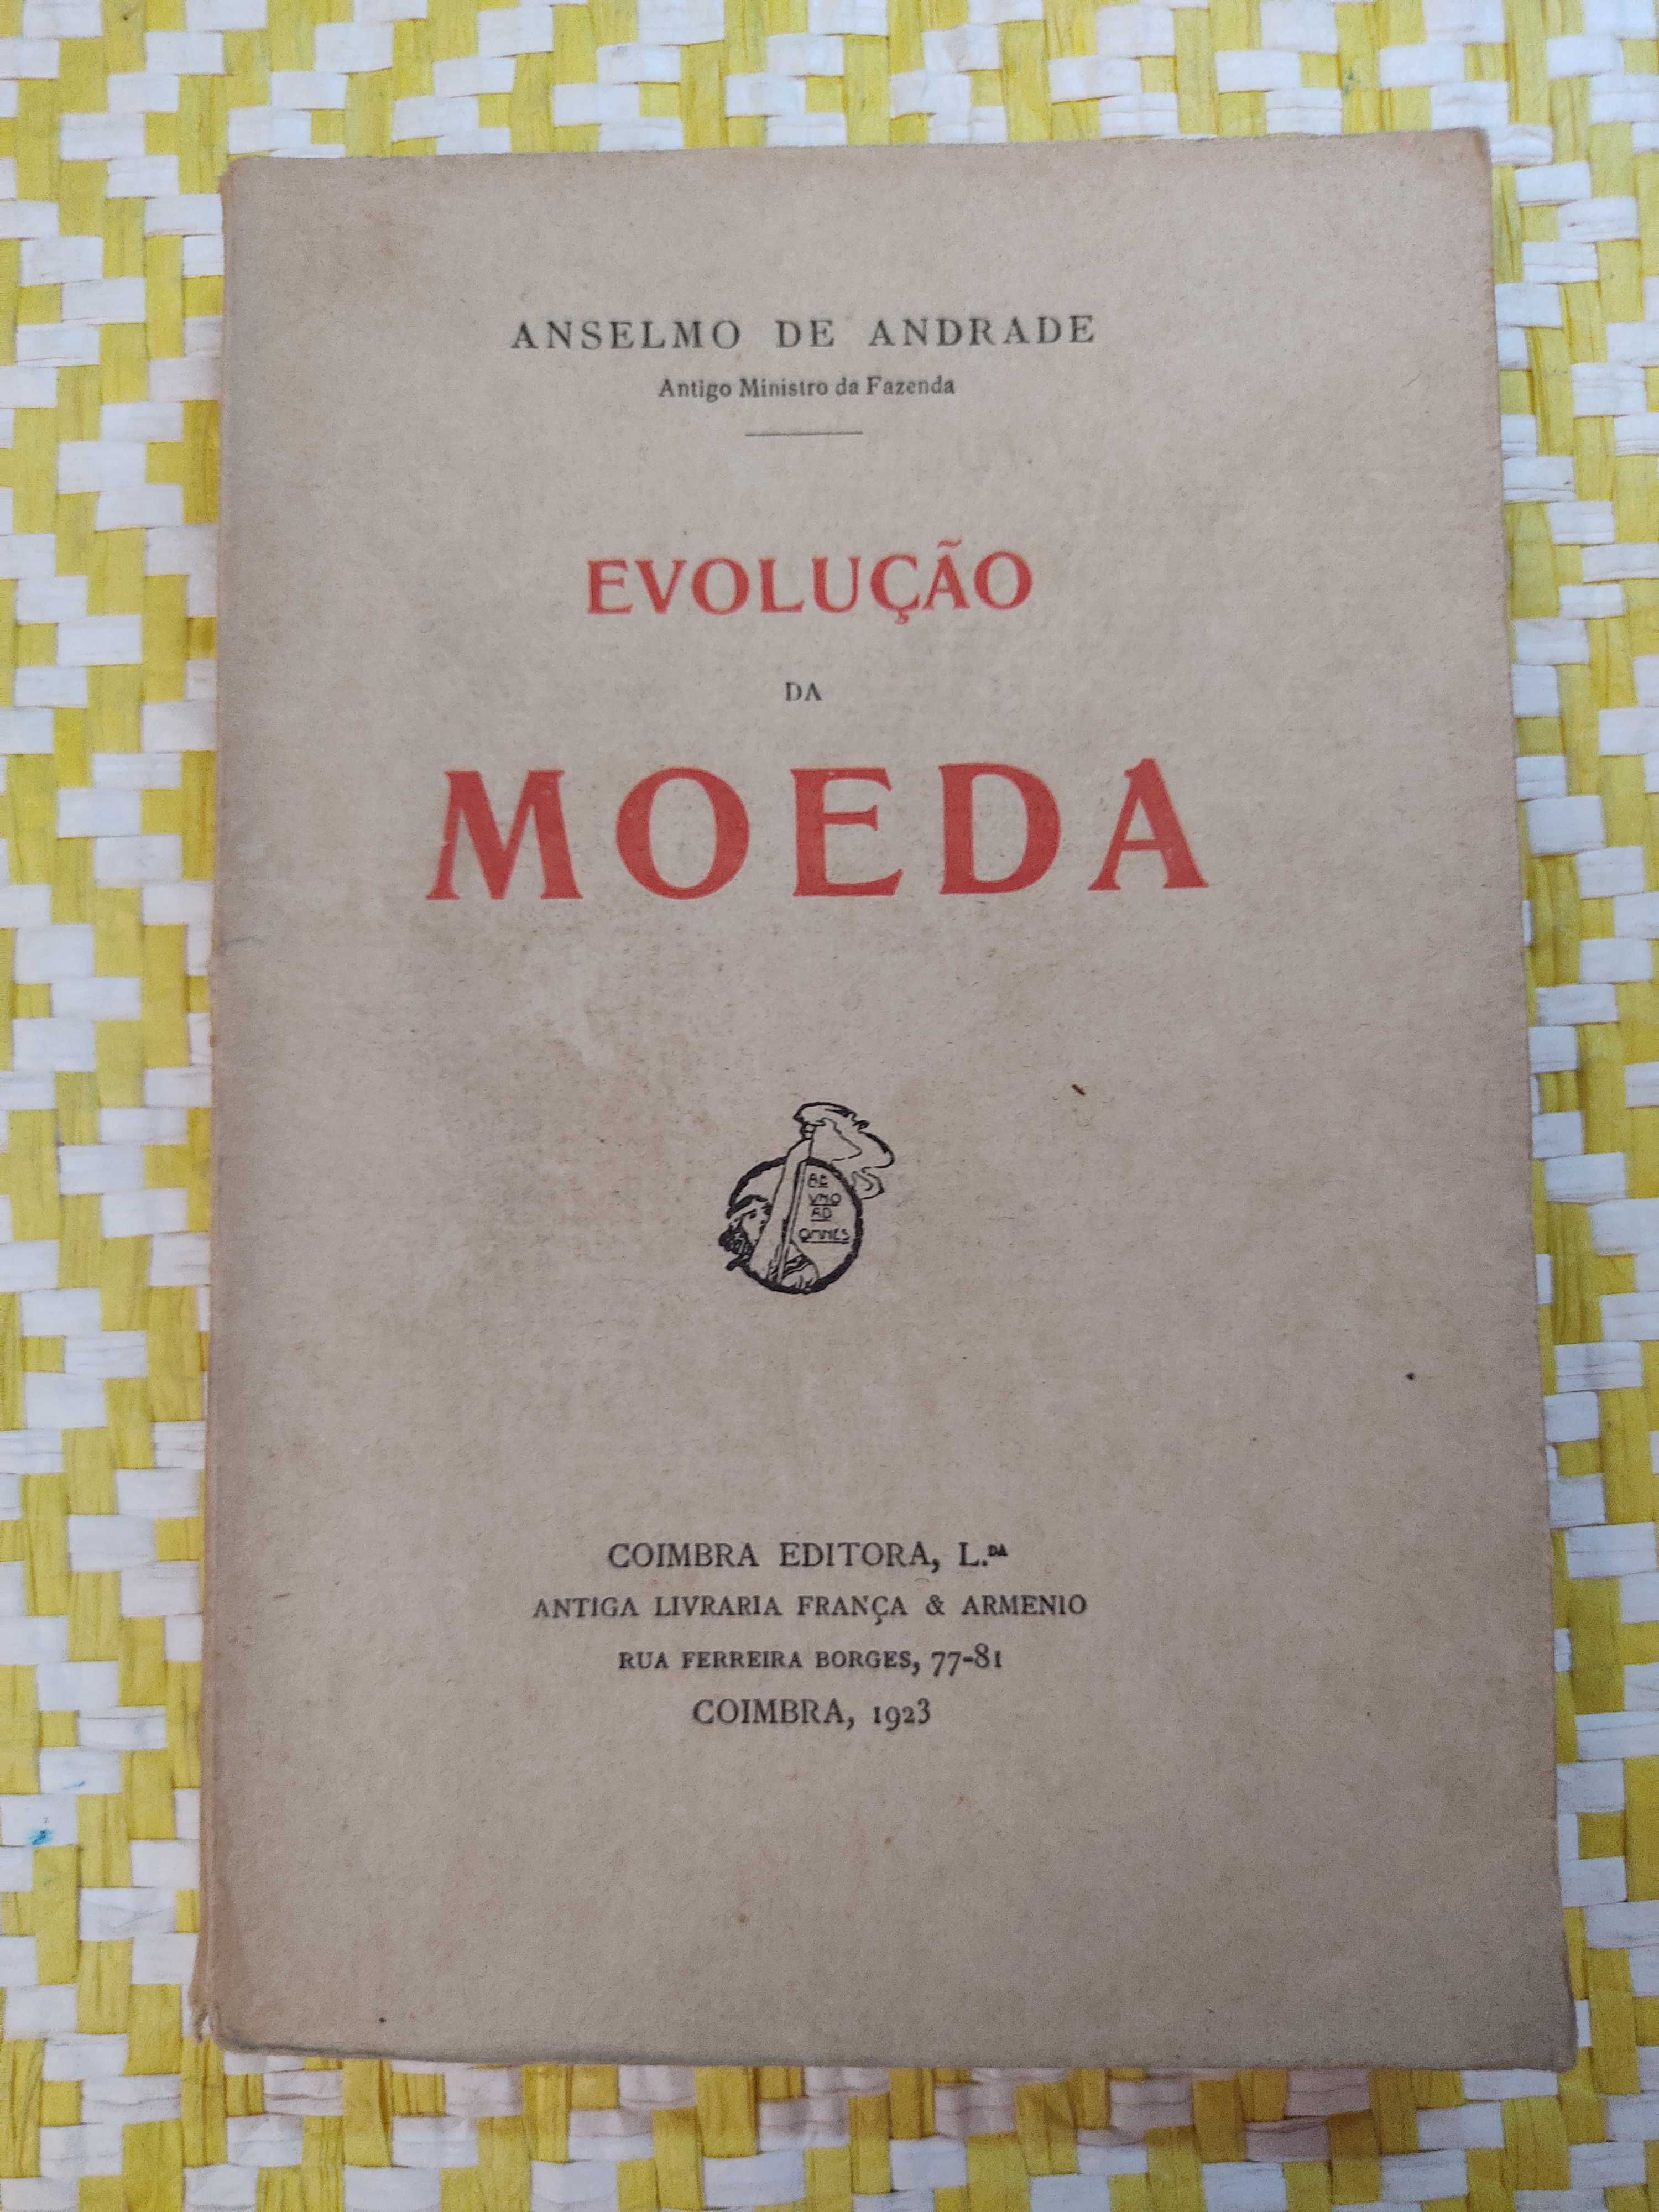 EVOLUÇÃO DA MOEDA 
Anselmo de Andrade